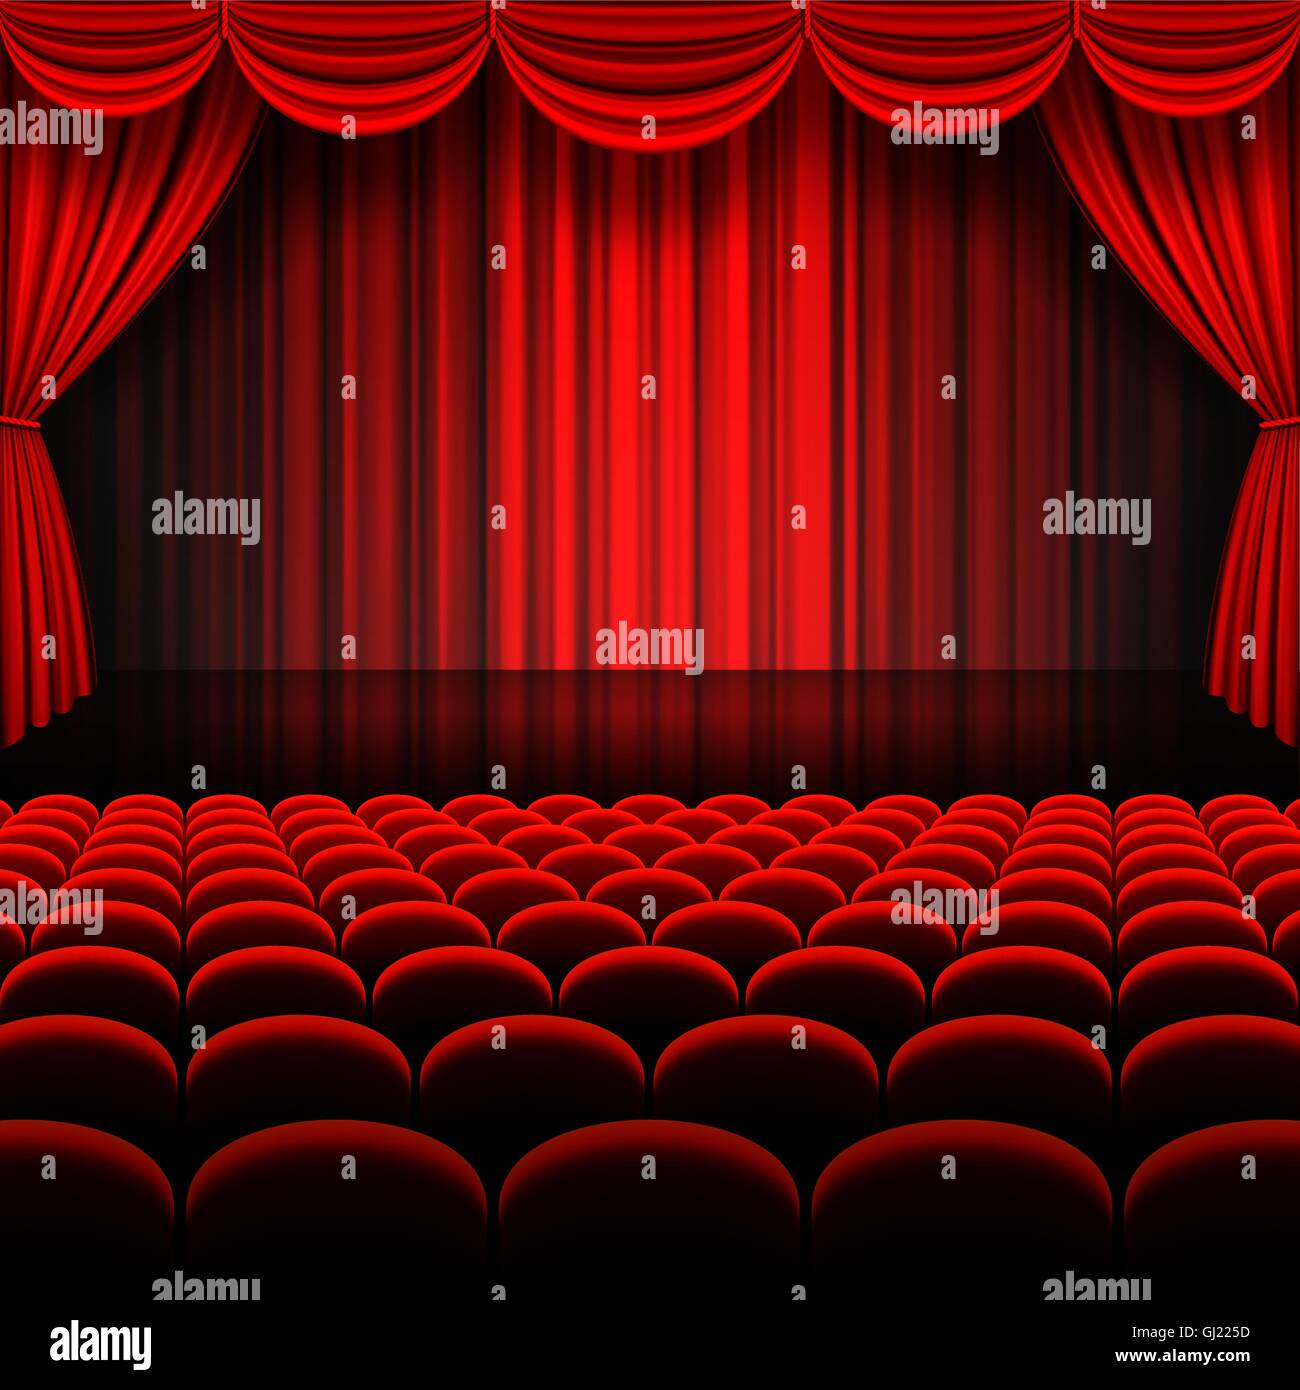 Un vecteur des illustrations d'une scène de théâtre avec des rideaux de scène complet rouge Illustration de Vecteur